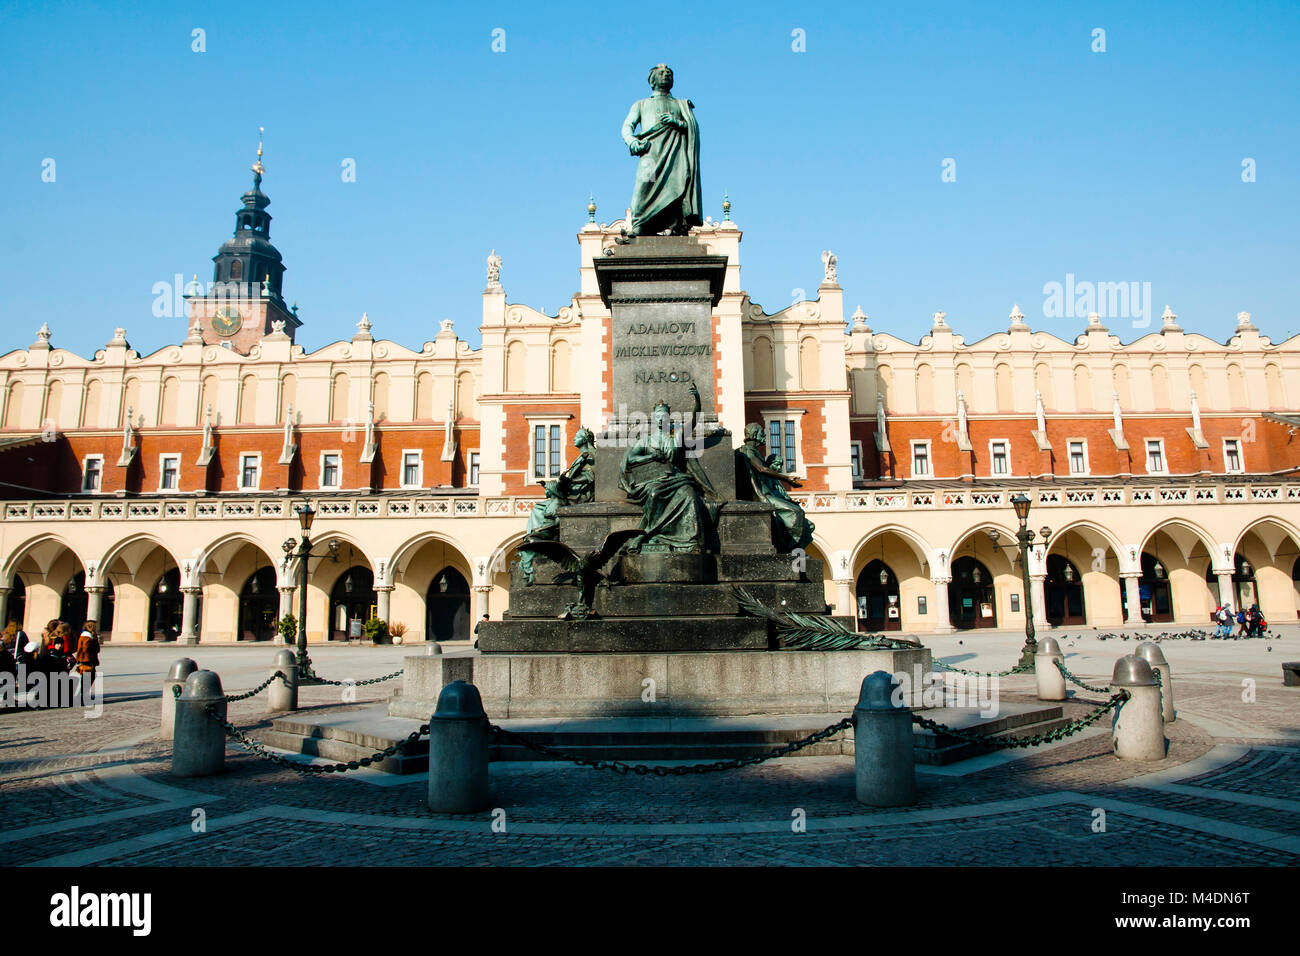 Adam Mickiewicz Monument - Krakow - Poland Stock Photo